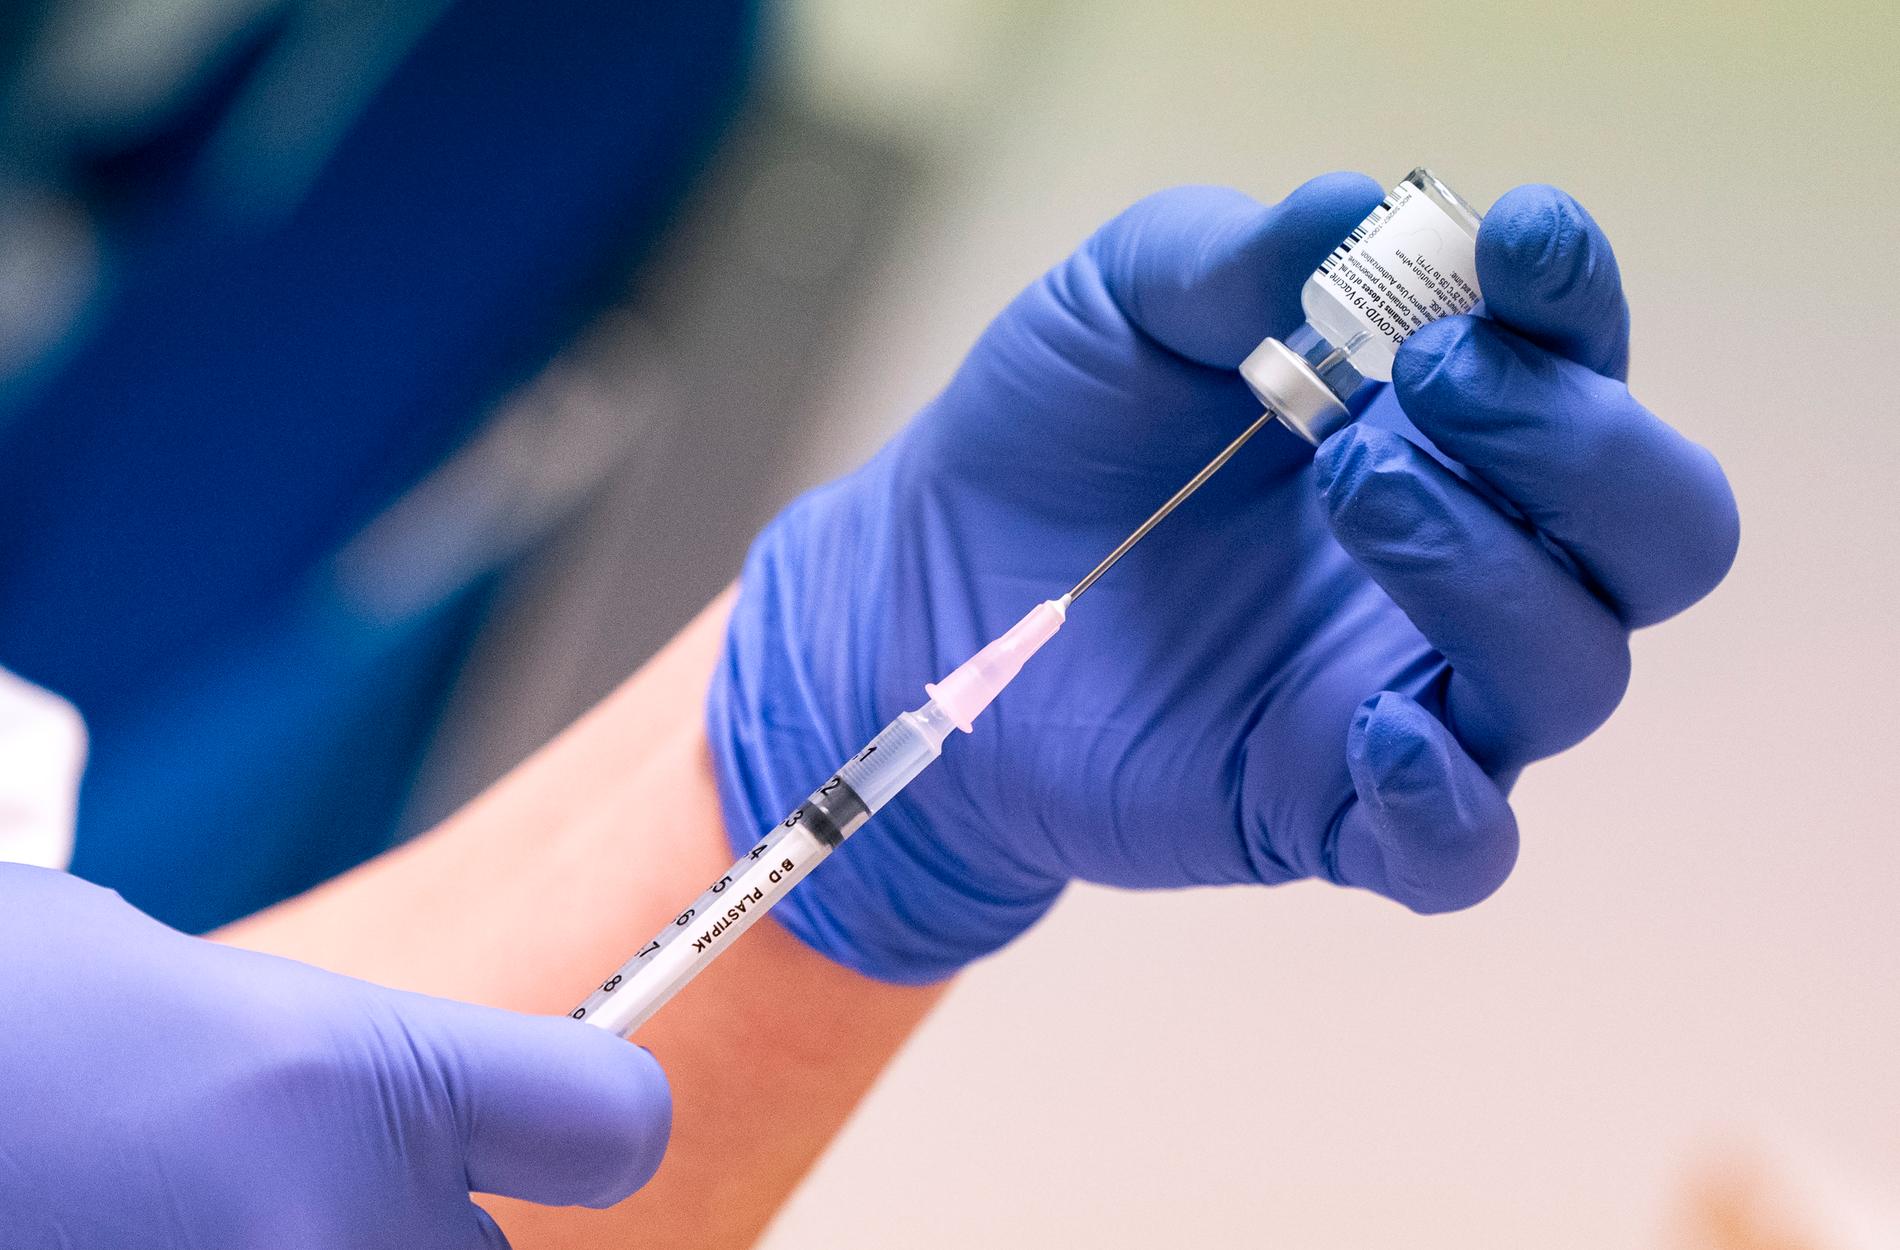 En spruta med vaccin förbereds. Covid-19 vaccin från Pfizer / Biontech blandas och förbereds på Vårdcentralen i Råå inför de första vaccinationerna den 27 december.